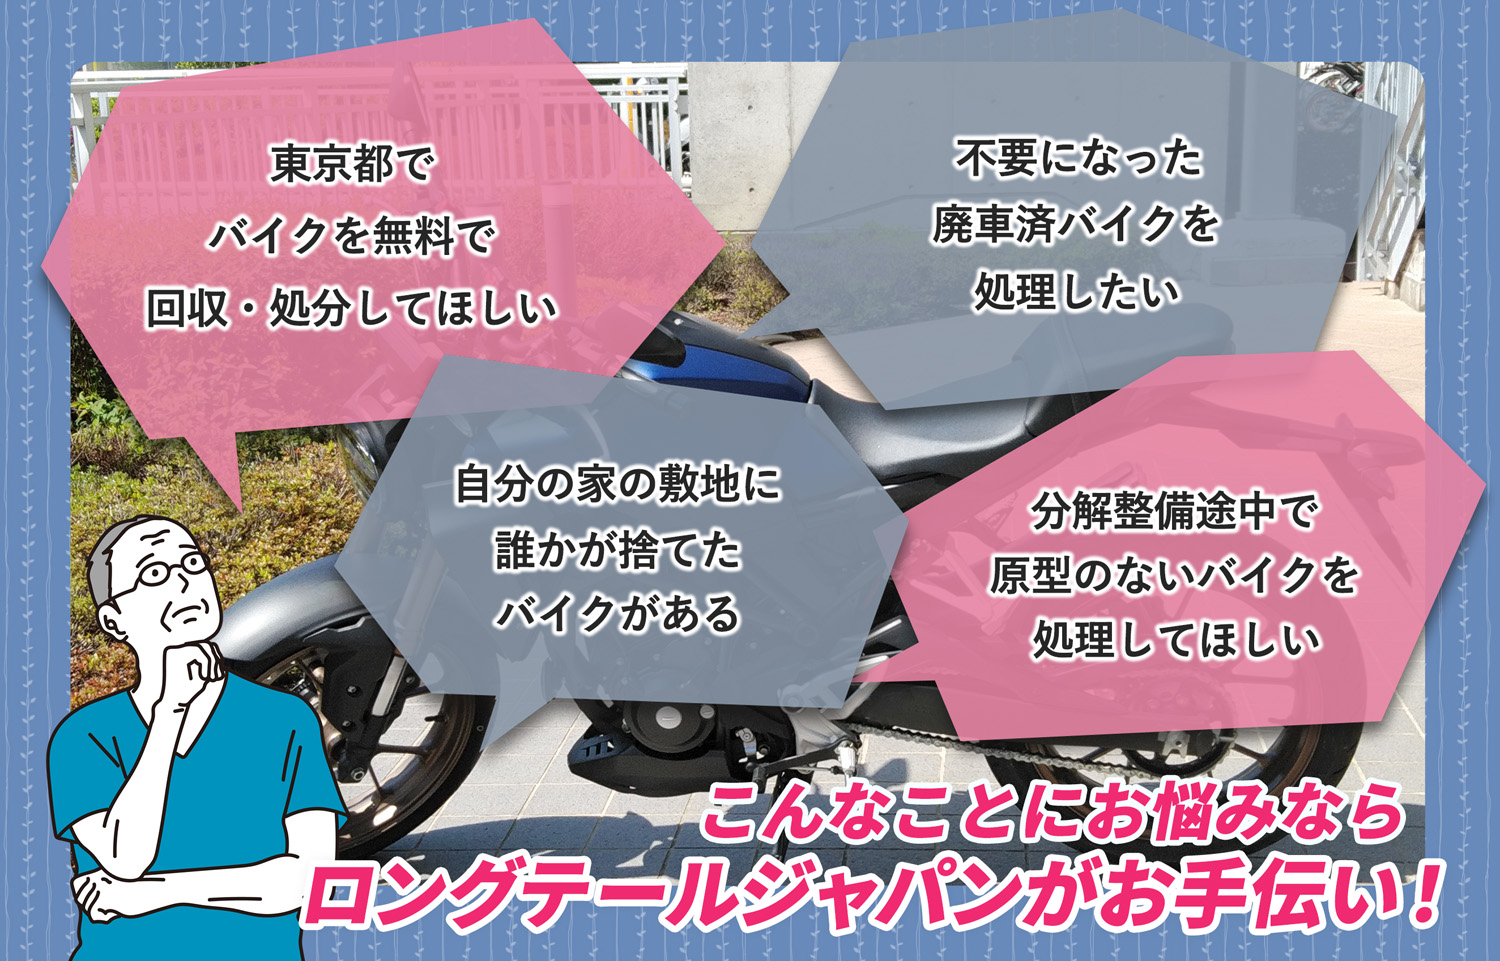 東京都でこんなバイクの処分にお困りでしたらバイク無料回収処分隊がお手伝いいたします。